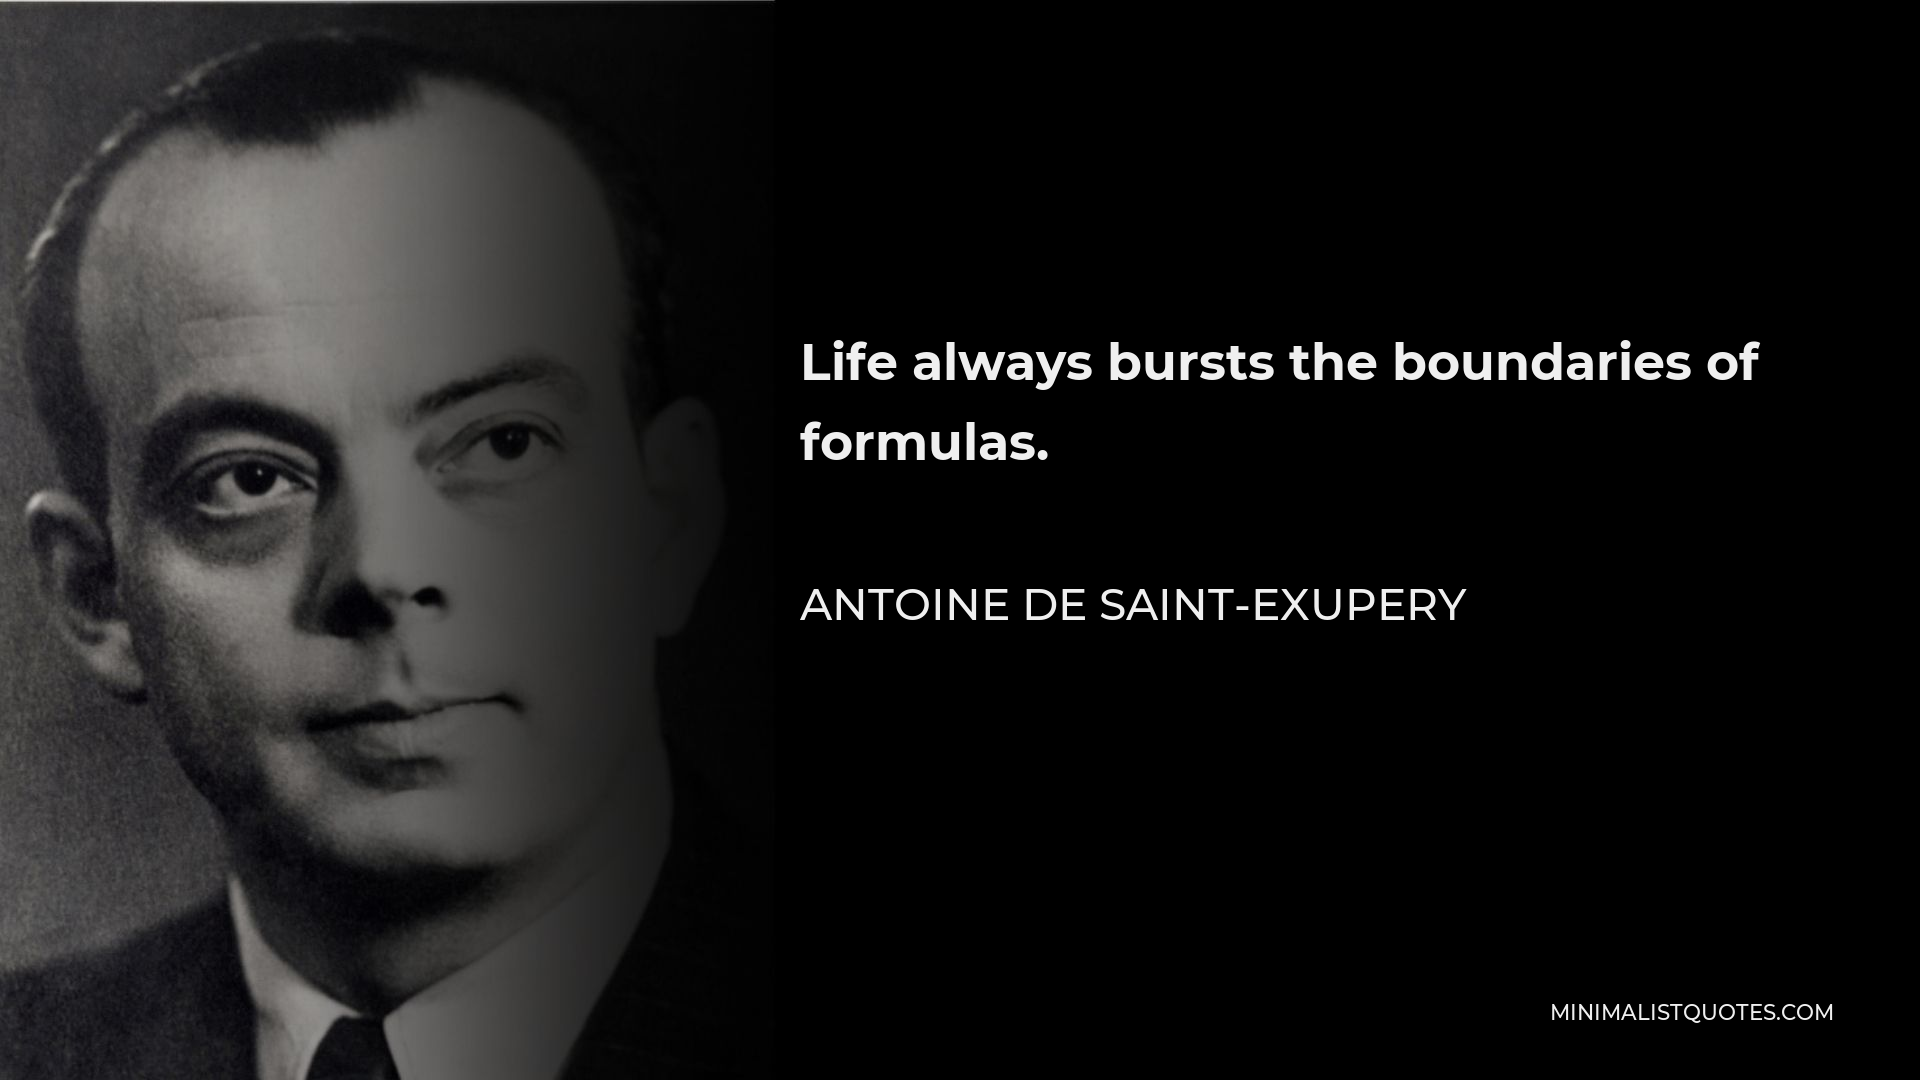 Antoine de Saint-Exupery Quote - Life always bursts the boundaries of formulas.